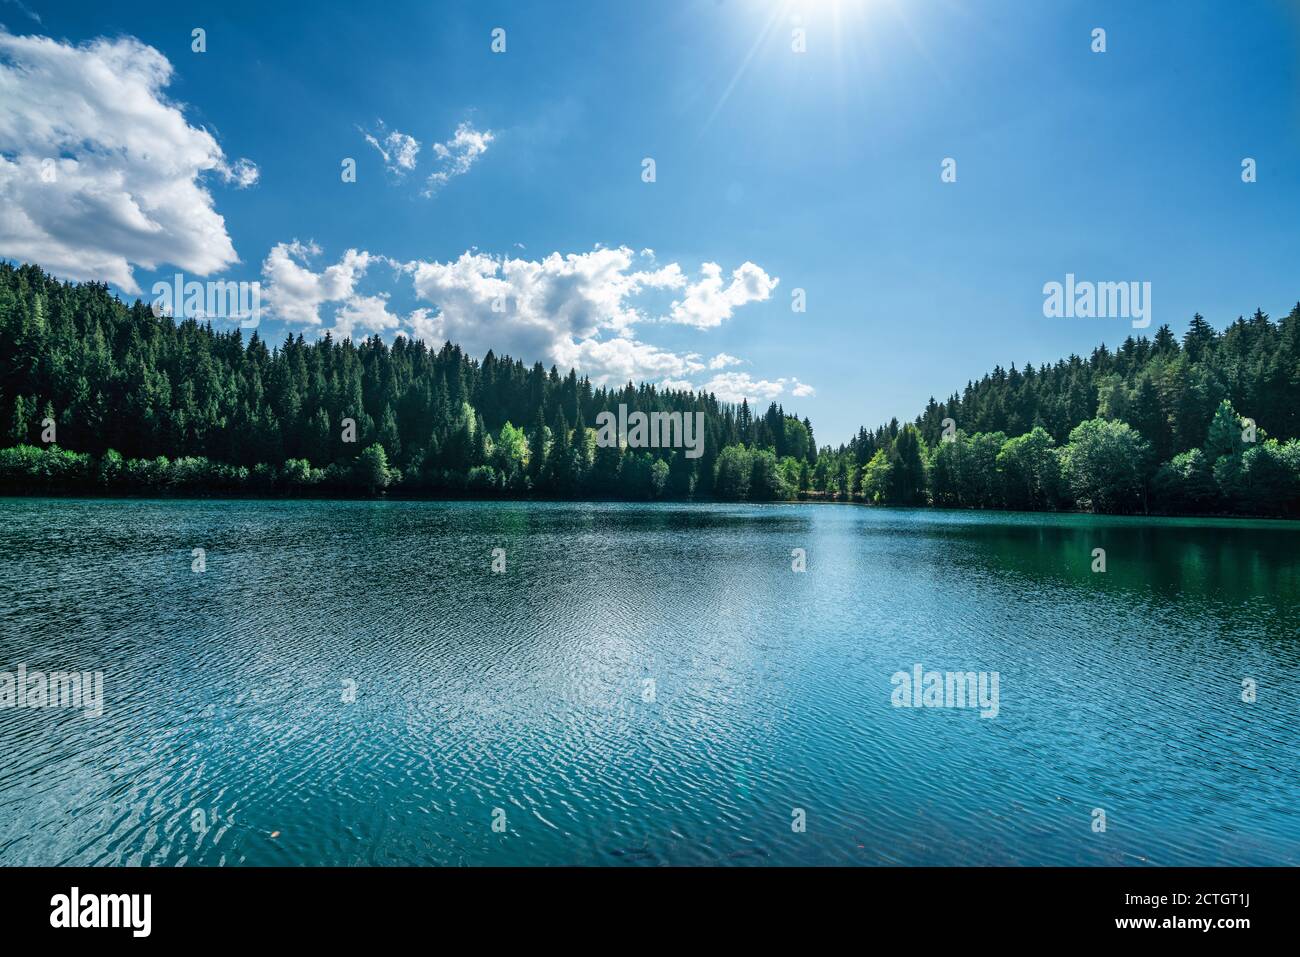 Splendida vista su un lago con cielo nuvoloso bianco e sfondo montano. Concetto di turismo di viaggio. Foto di alta qualità Foto Stock